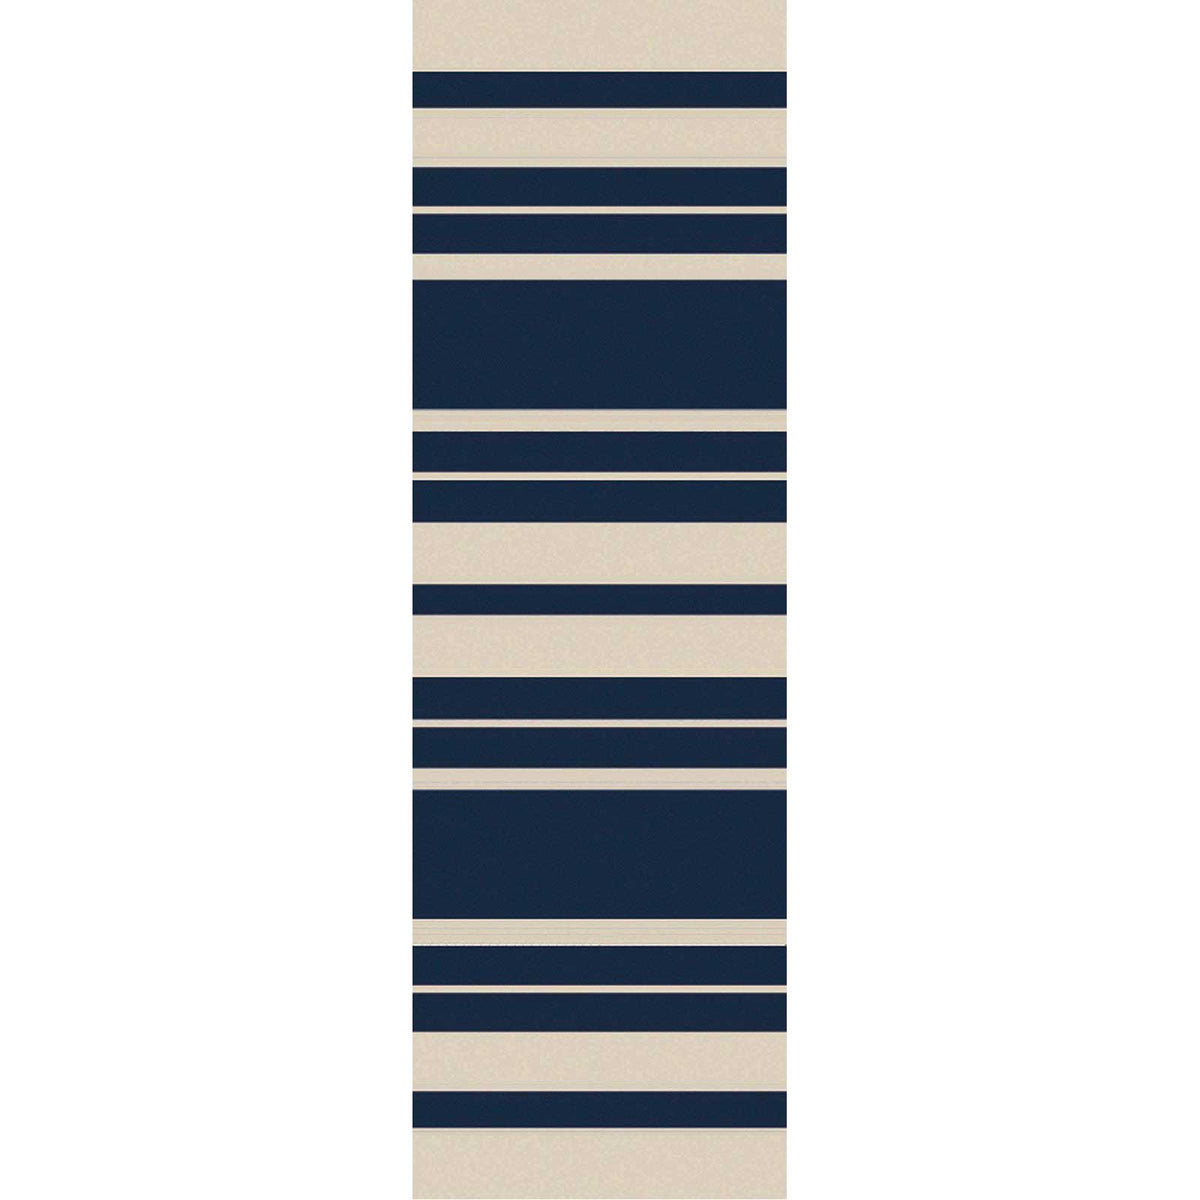 Picnic Striped Navy/Ivory Runner Rug